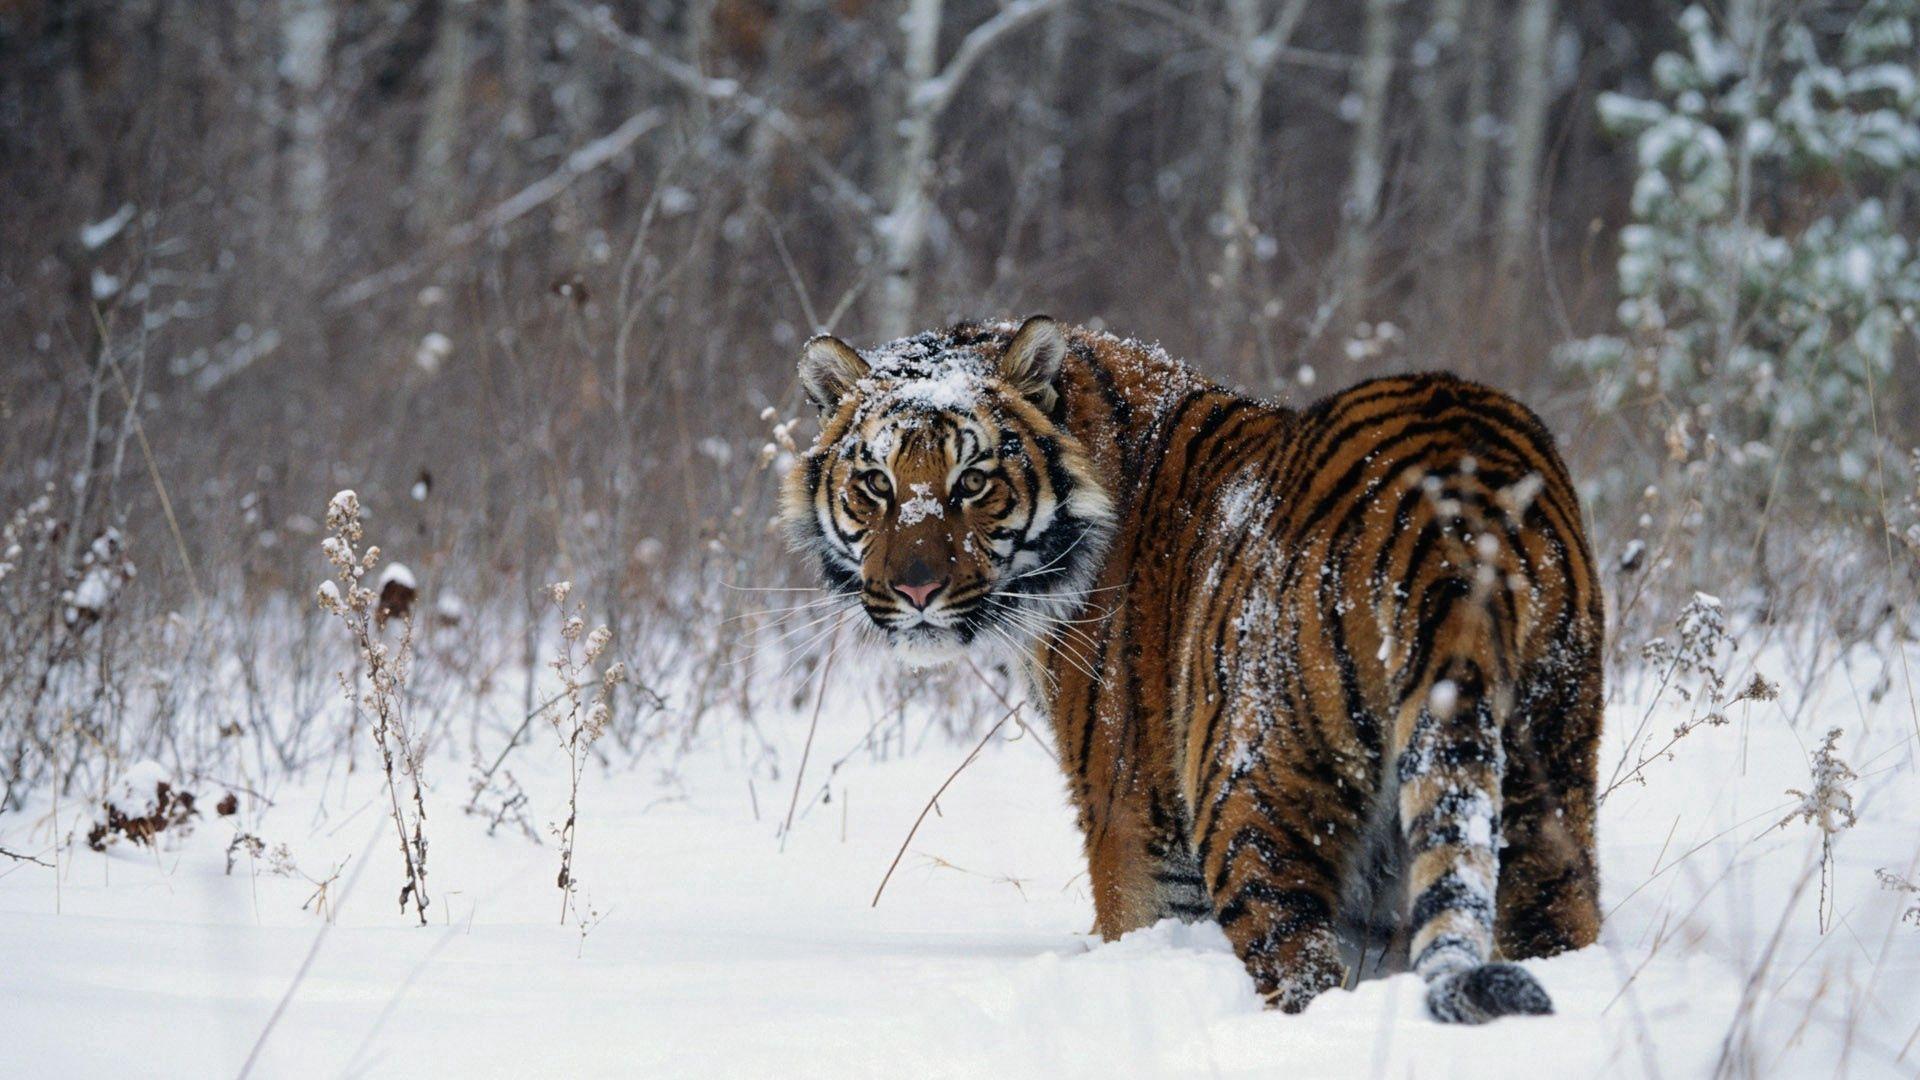 Картинки тигр, зима, снег - обои 1920x1080, картинка №395250